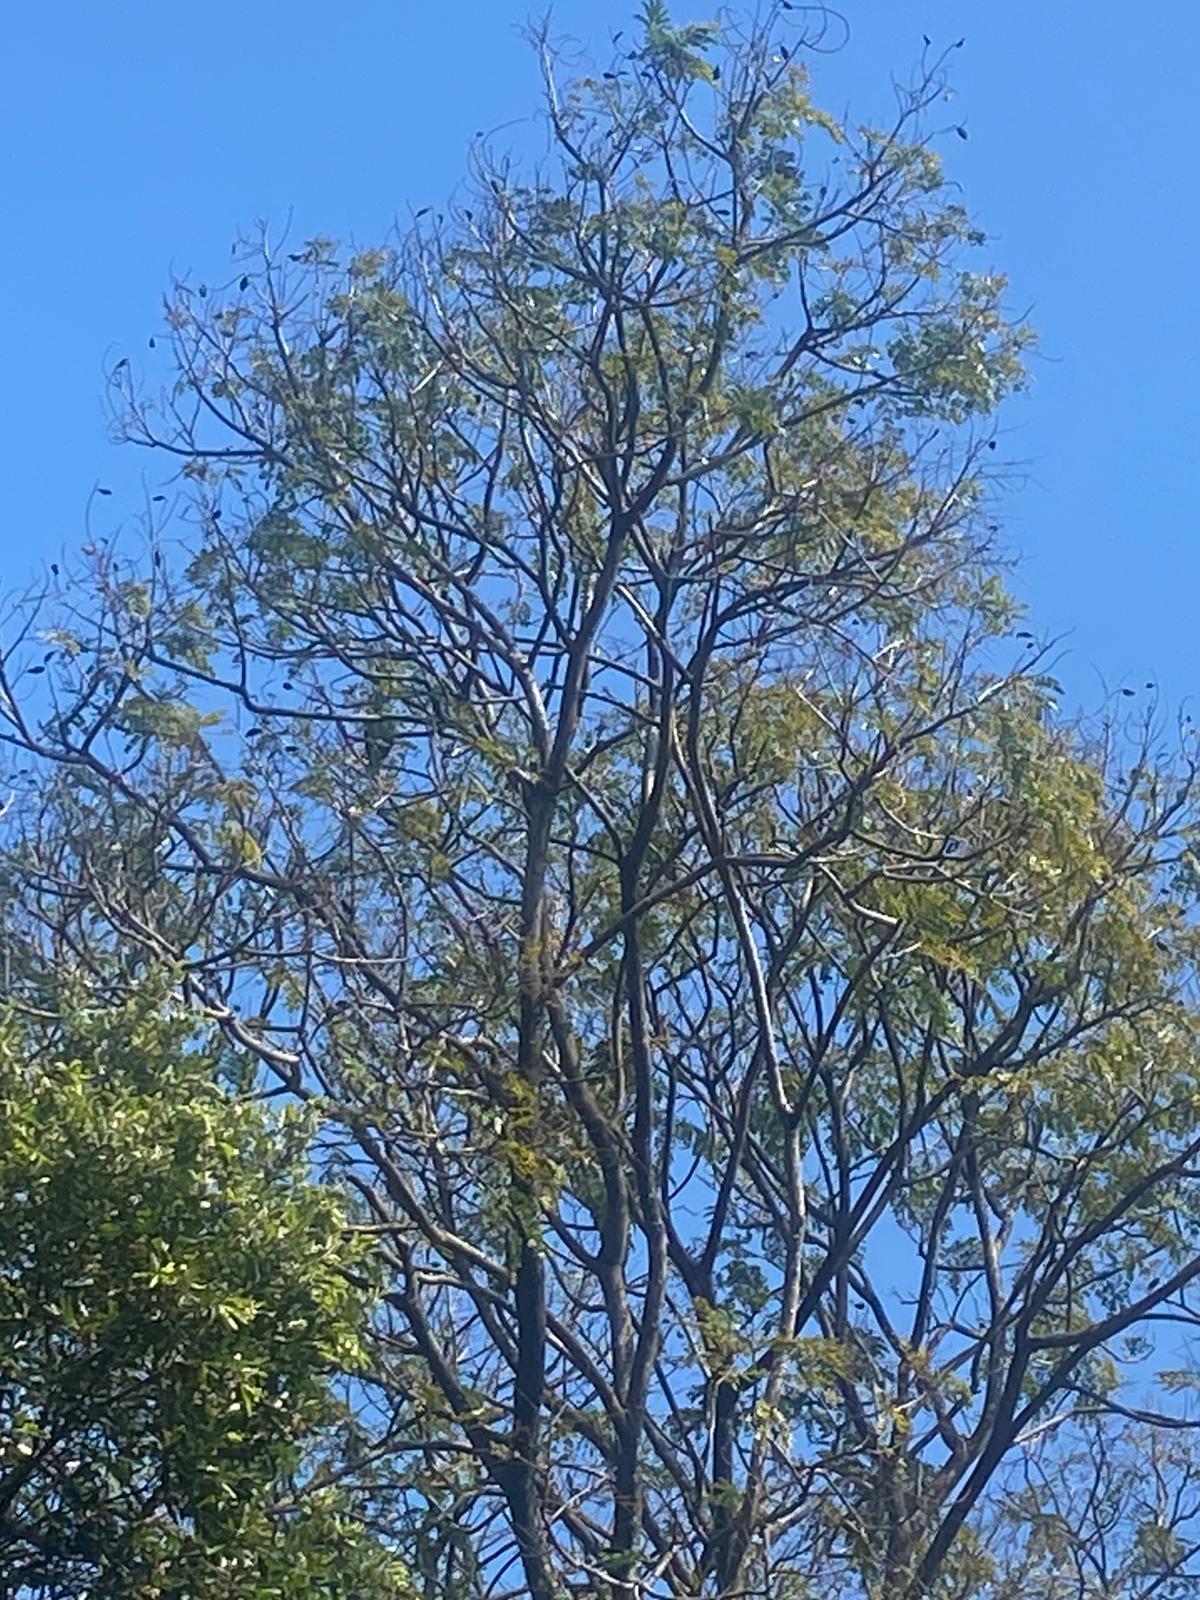 Papagaio estava em uma árvore da Rua Eugenílio Ramos, no bairro Jardim da Penha, em Vitória